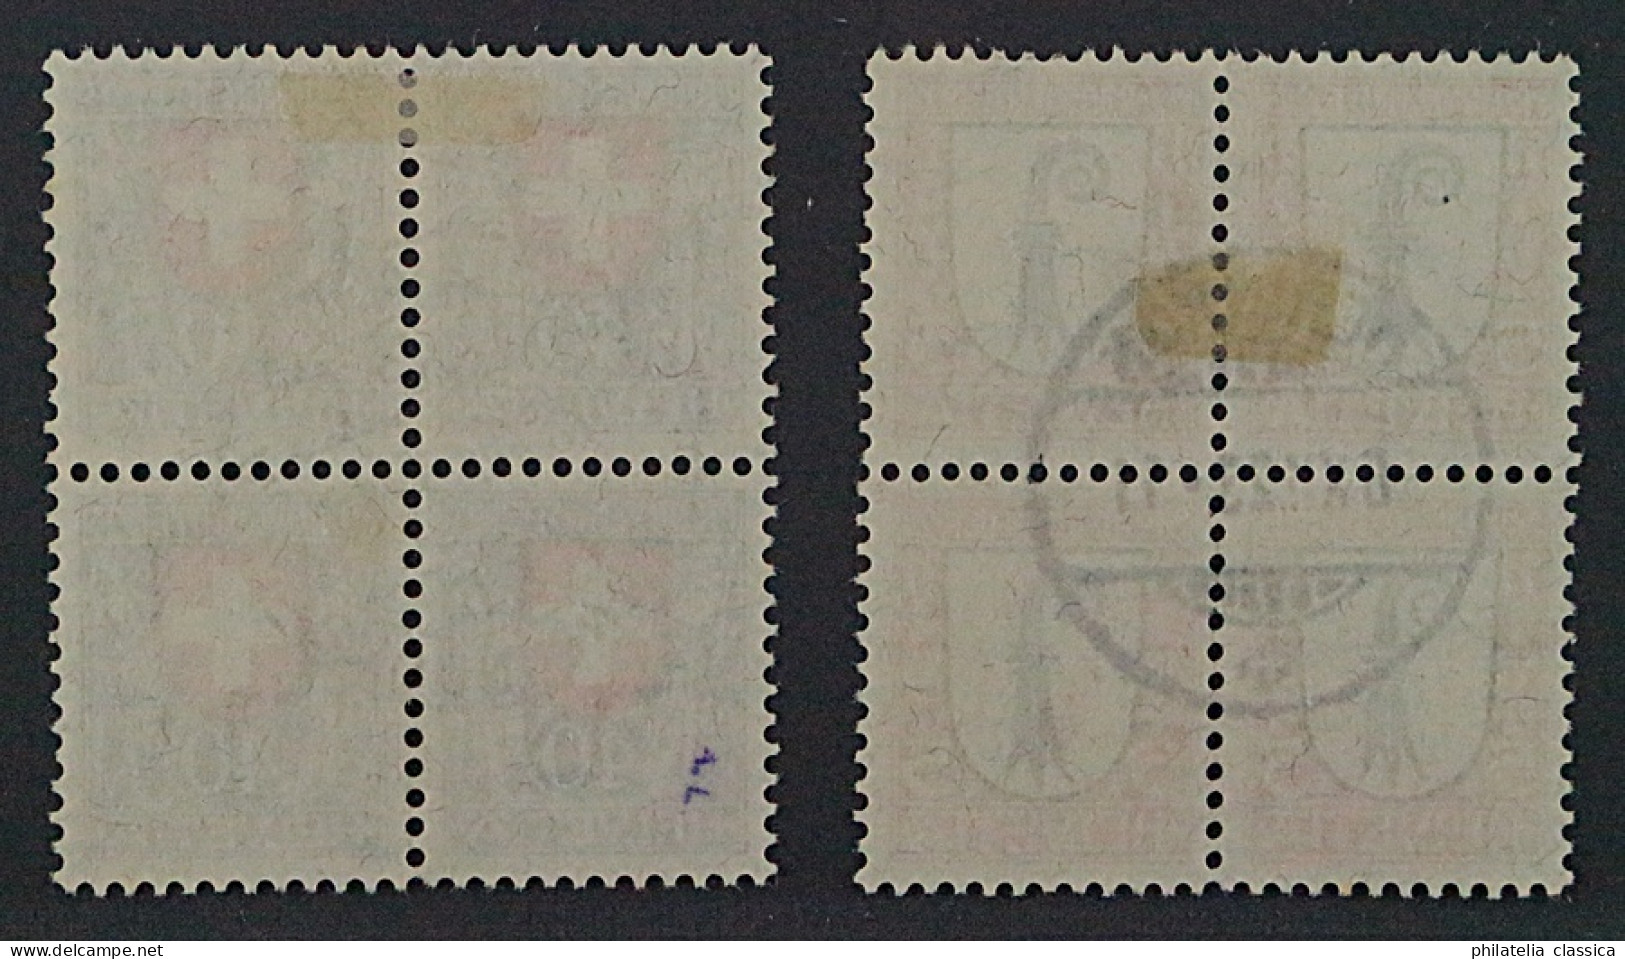 1923, SCHWEIZ Juventute Viererblocks 185+188, Zentrisch Gestempelt, 380,- SFr. - Usados